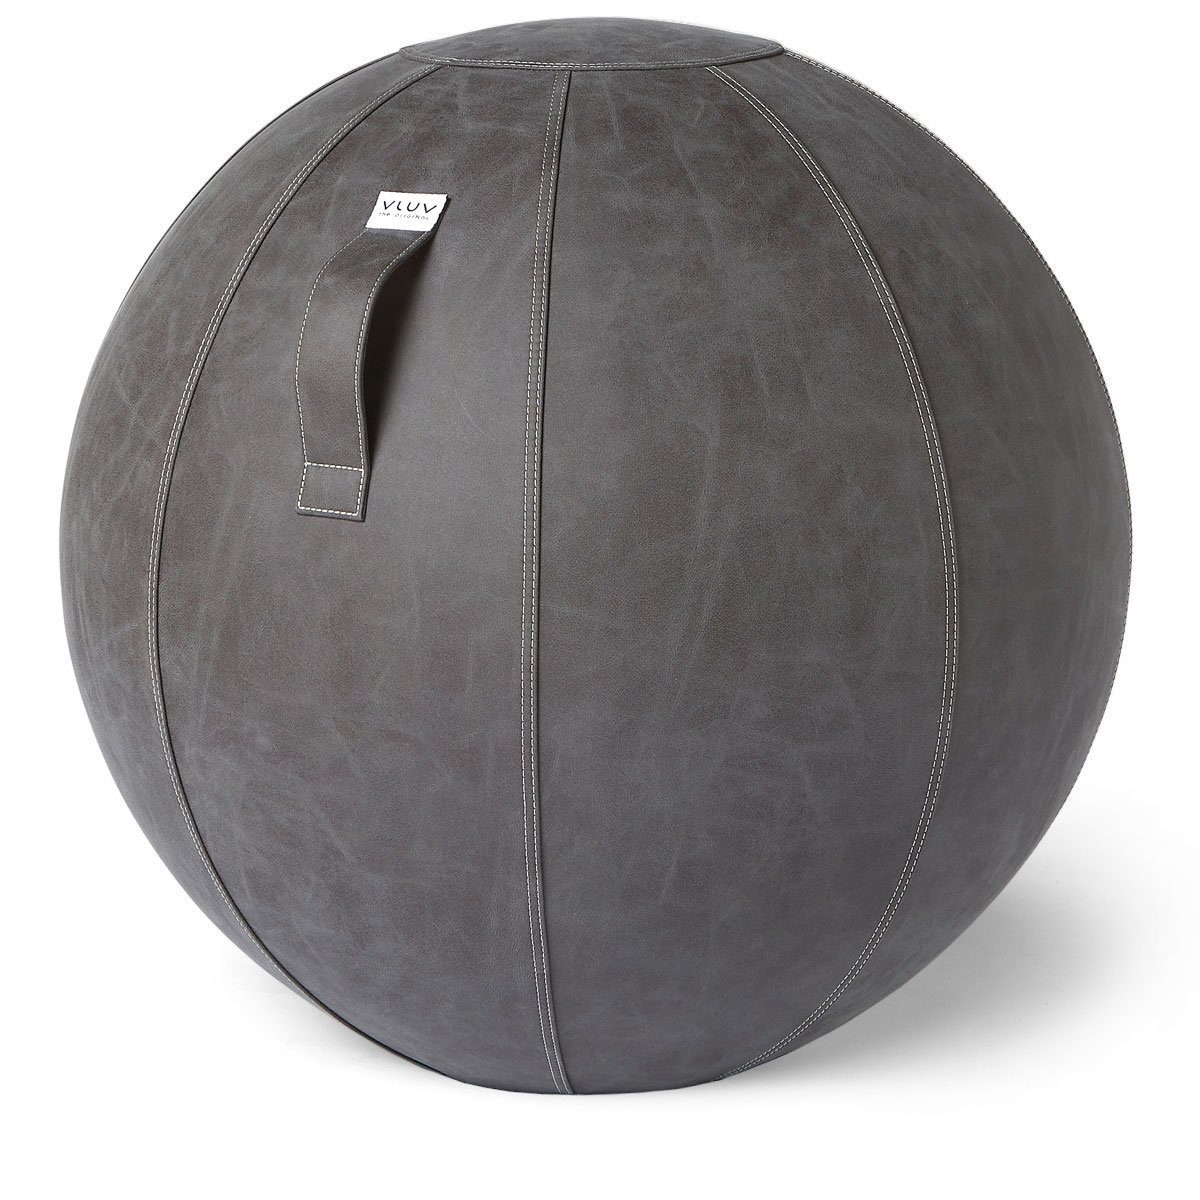 VLUV Sitzball VLUV BOL Vega Sitzball, ergonomisches Sitzmöbel für Büro und Zuhause, Farbe: Dark Grey (Dunkelgrau), Ø 60cm - 65cm, Bezug aus veganem Kunstleder, robust und formstabil, mit Tragegriff